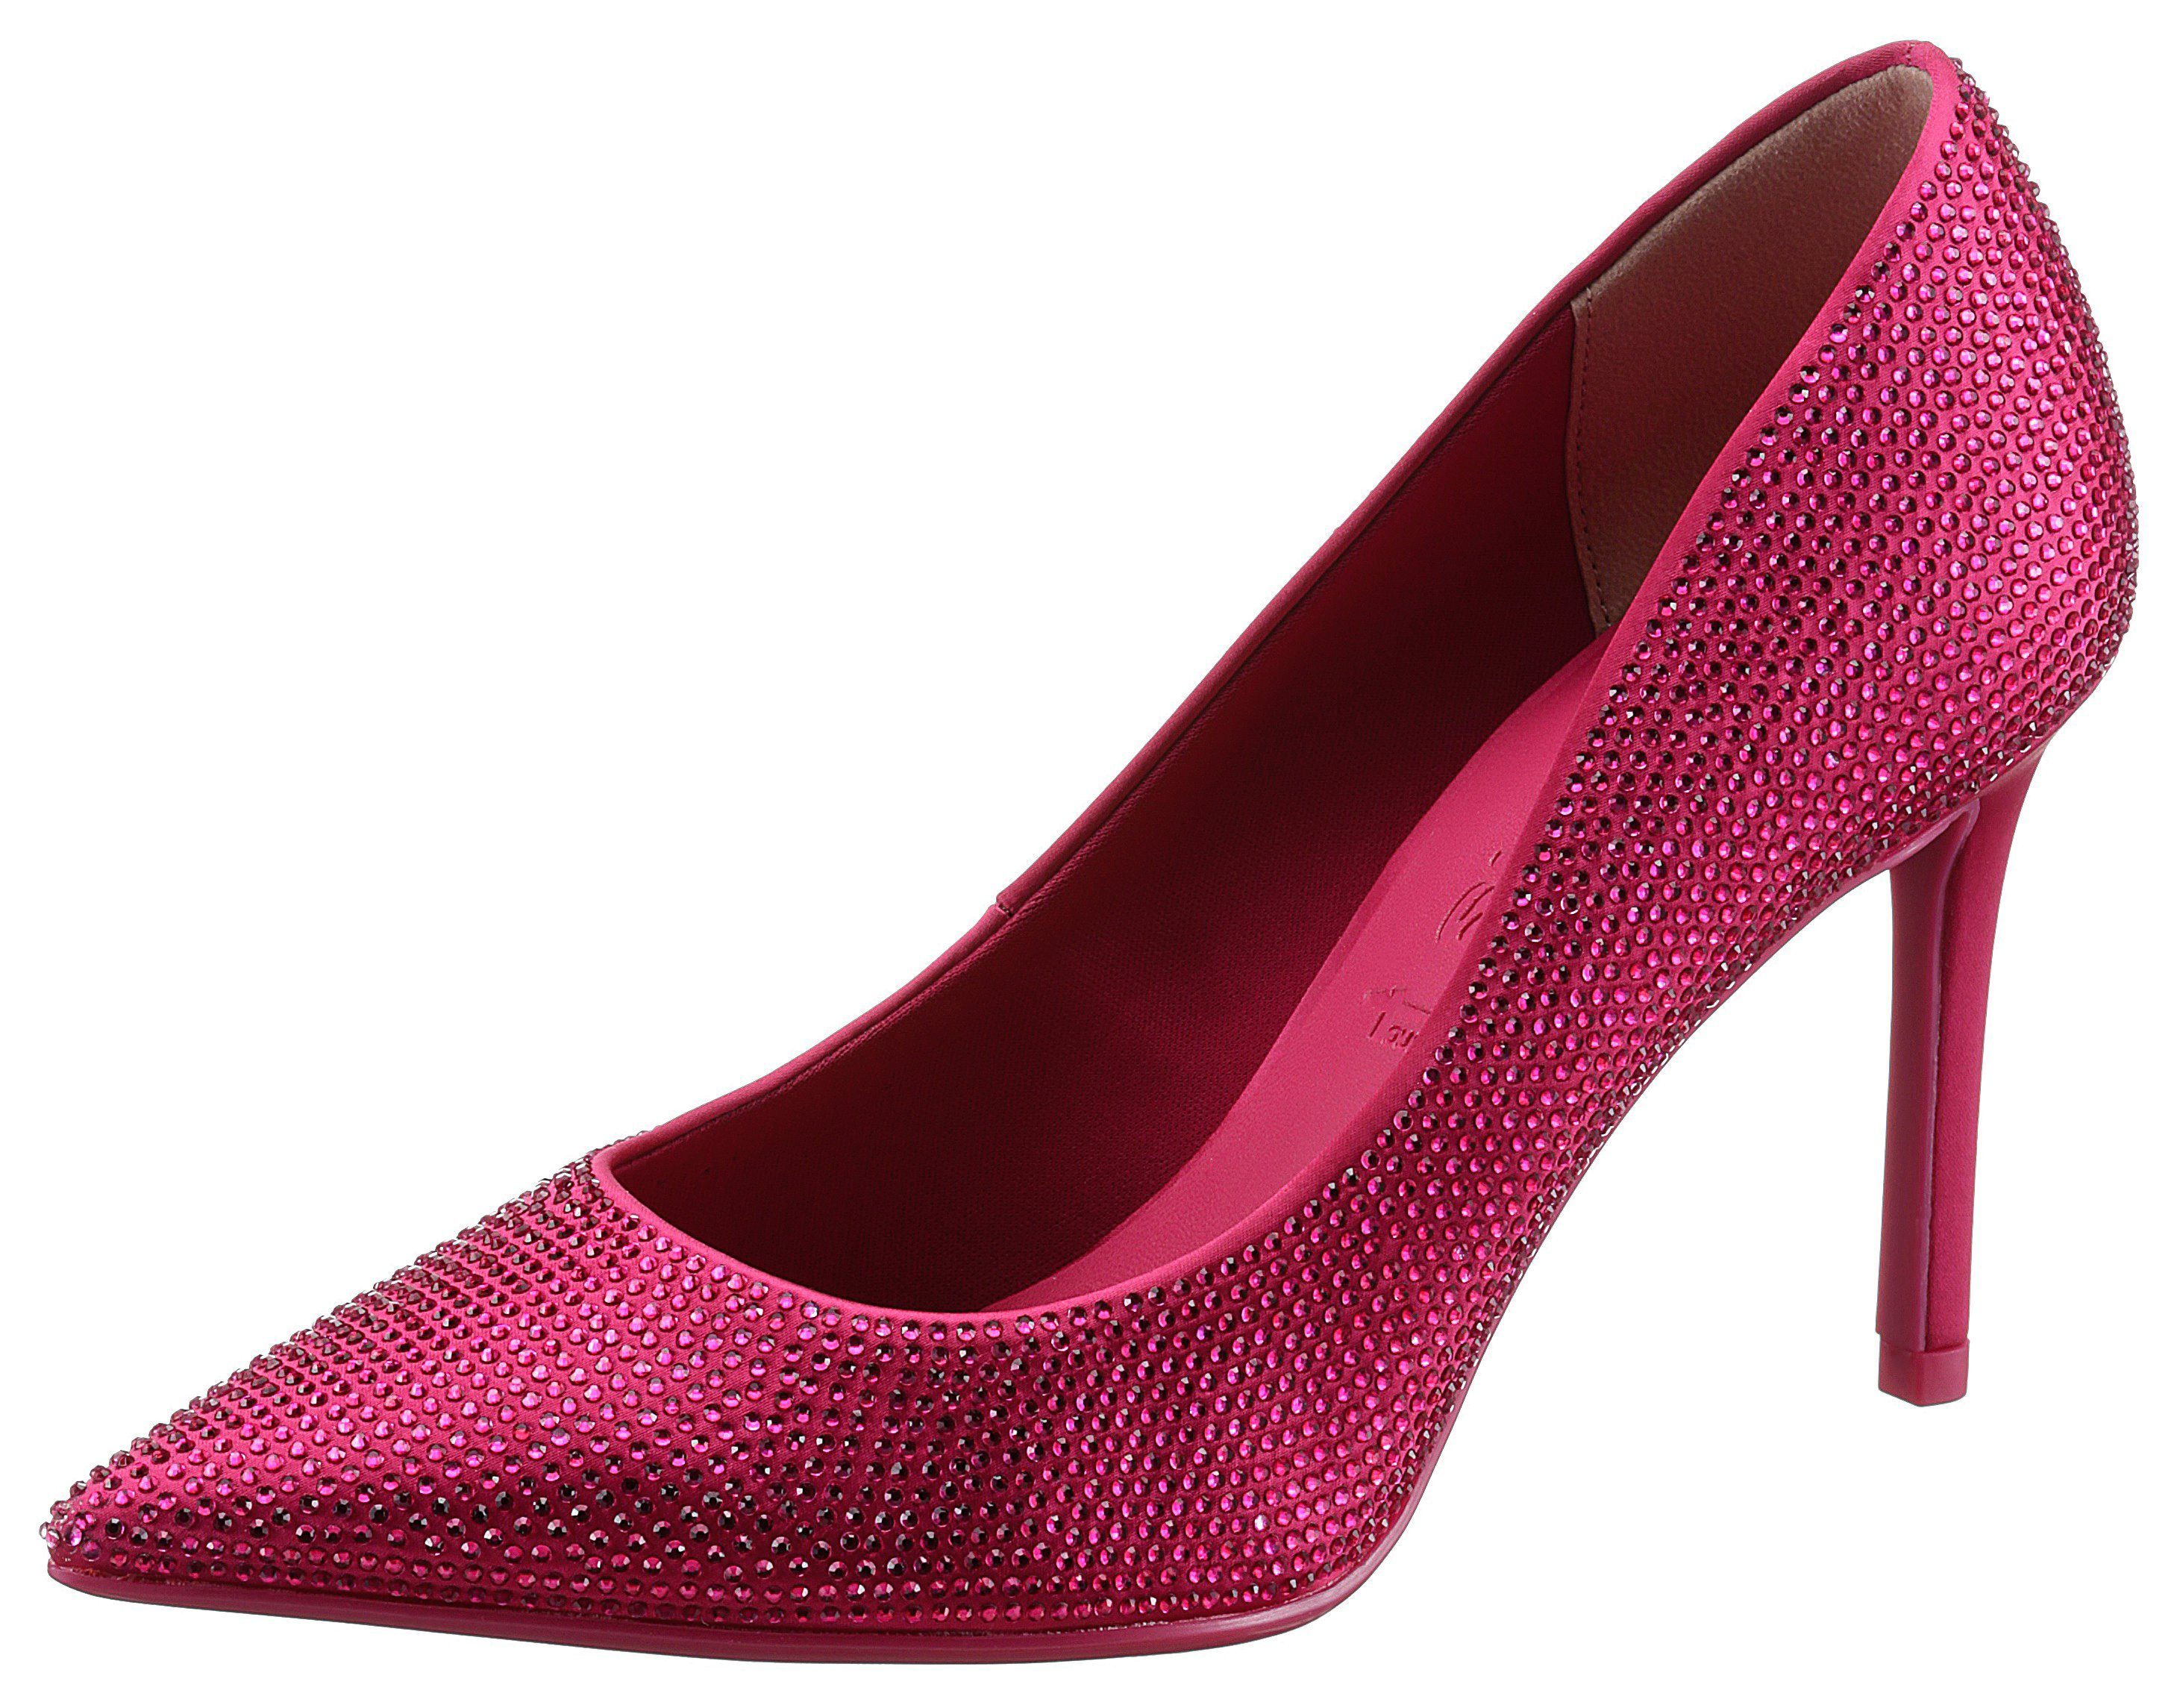 Niedlich! Tamaris High-Heel-Pumps in eleganter spitzer pink Form